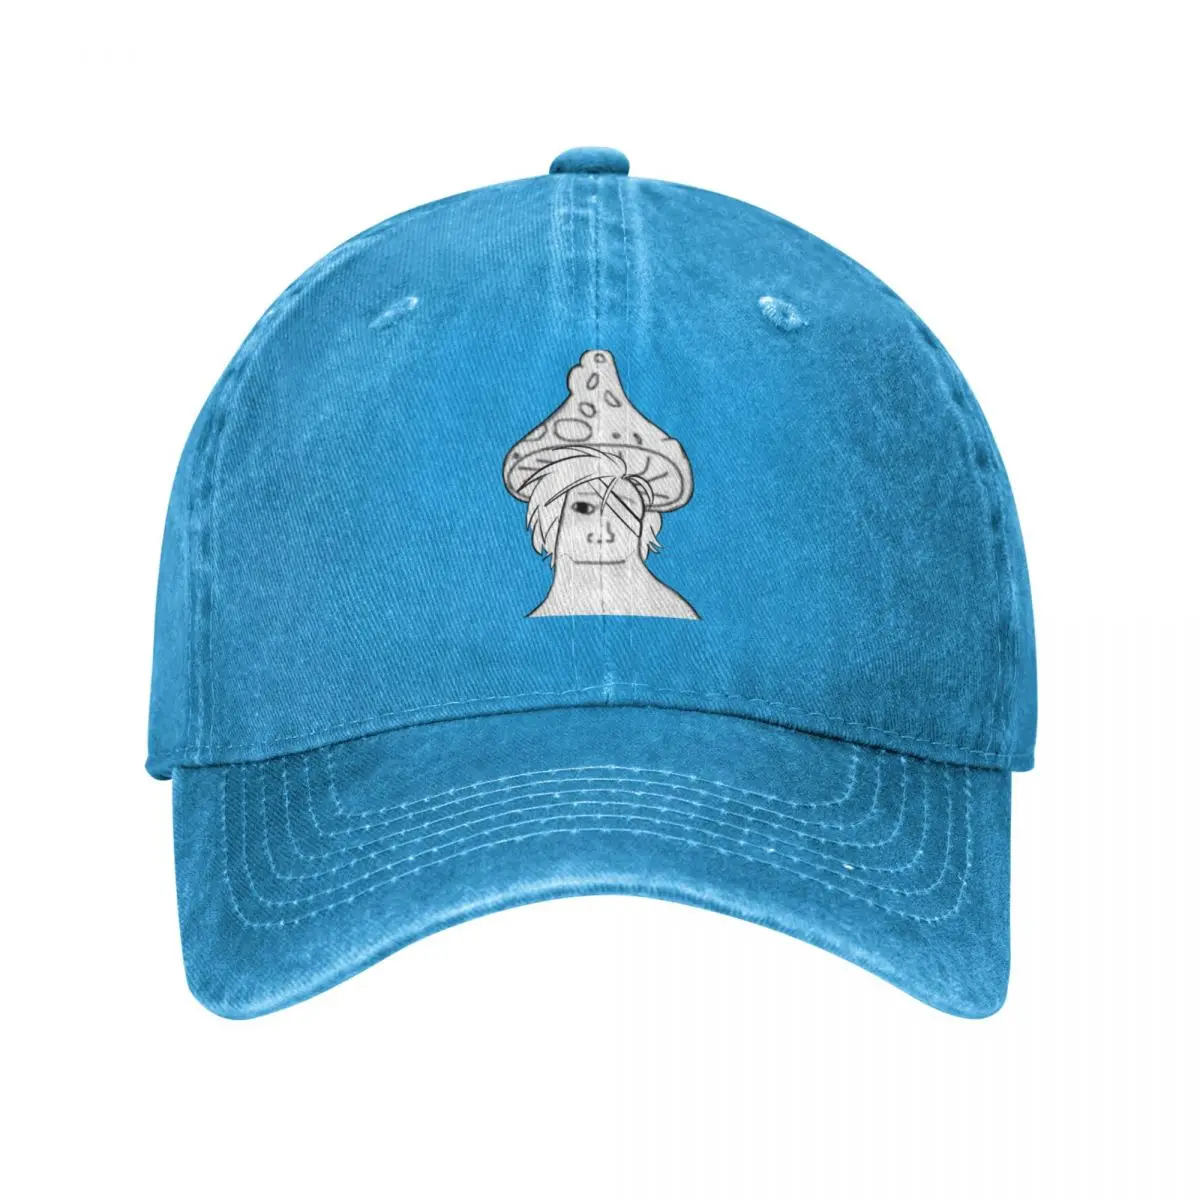 Goldfish with a Shark Fin Cap Cowboy Hat golf sun hats for women Men's -  AliExpress